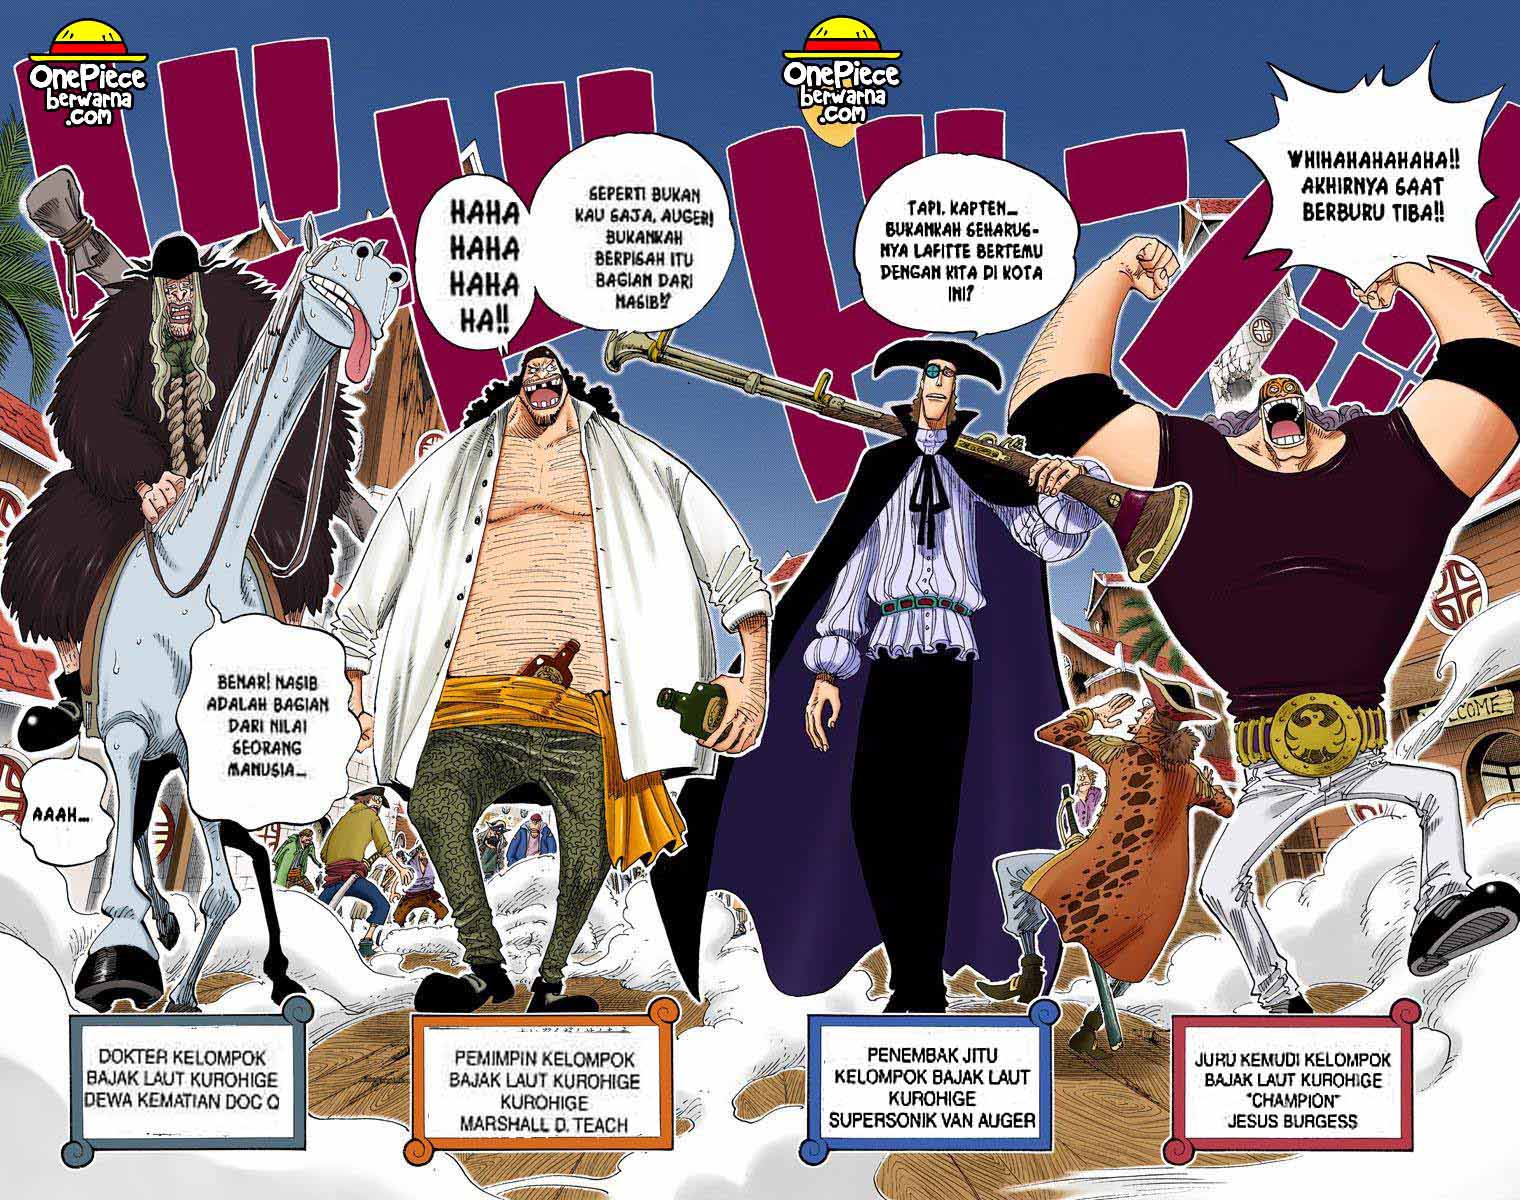 One Piece Berwarna Chapter 234